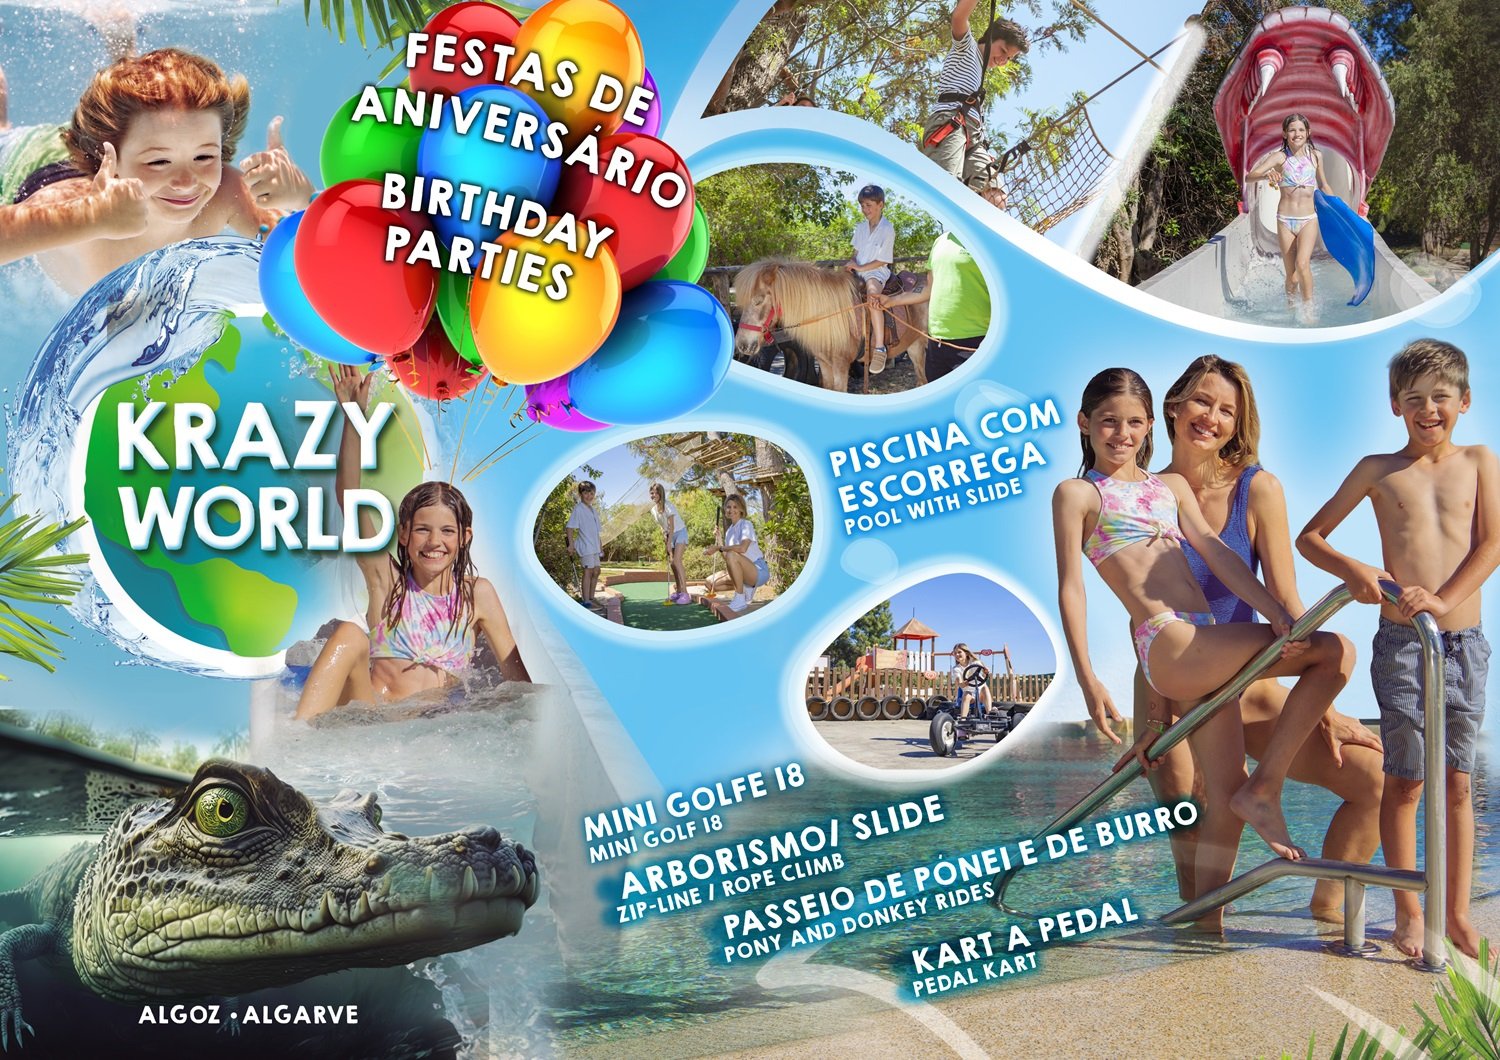 Krazy World Fiesta de Cumpleaños y Grupos